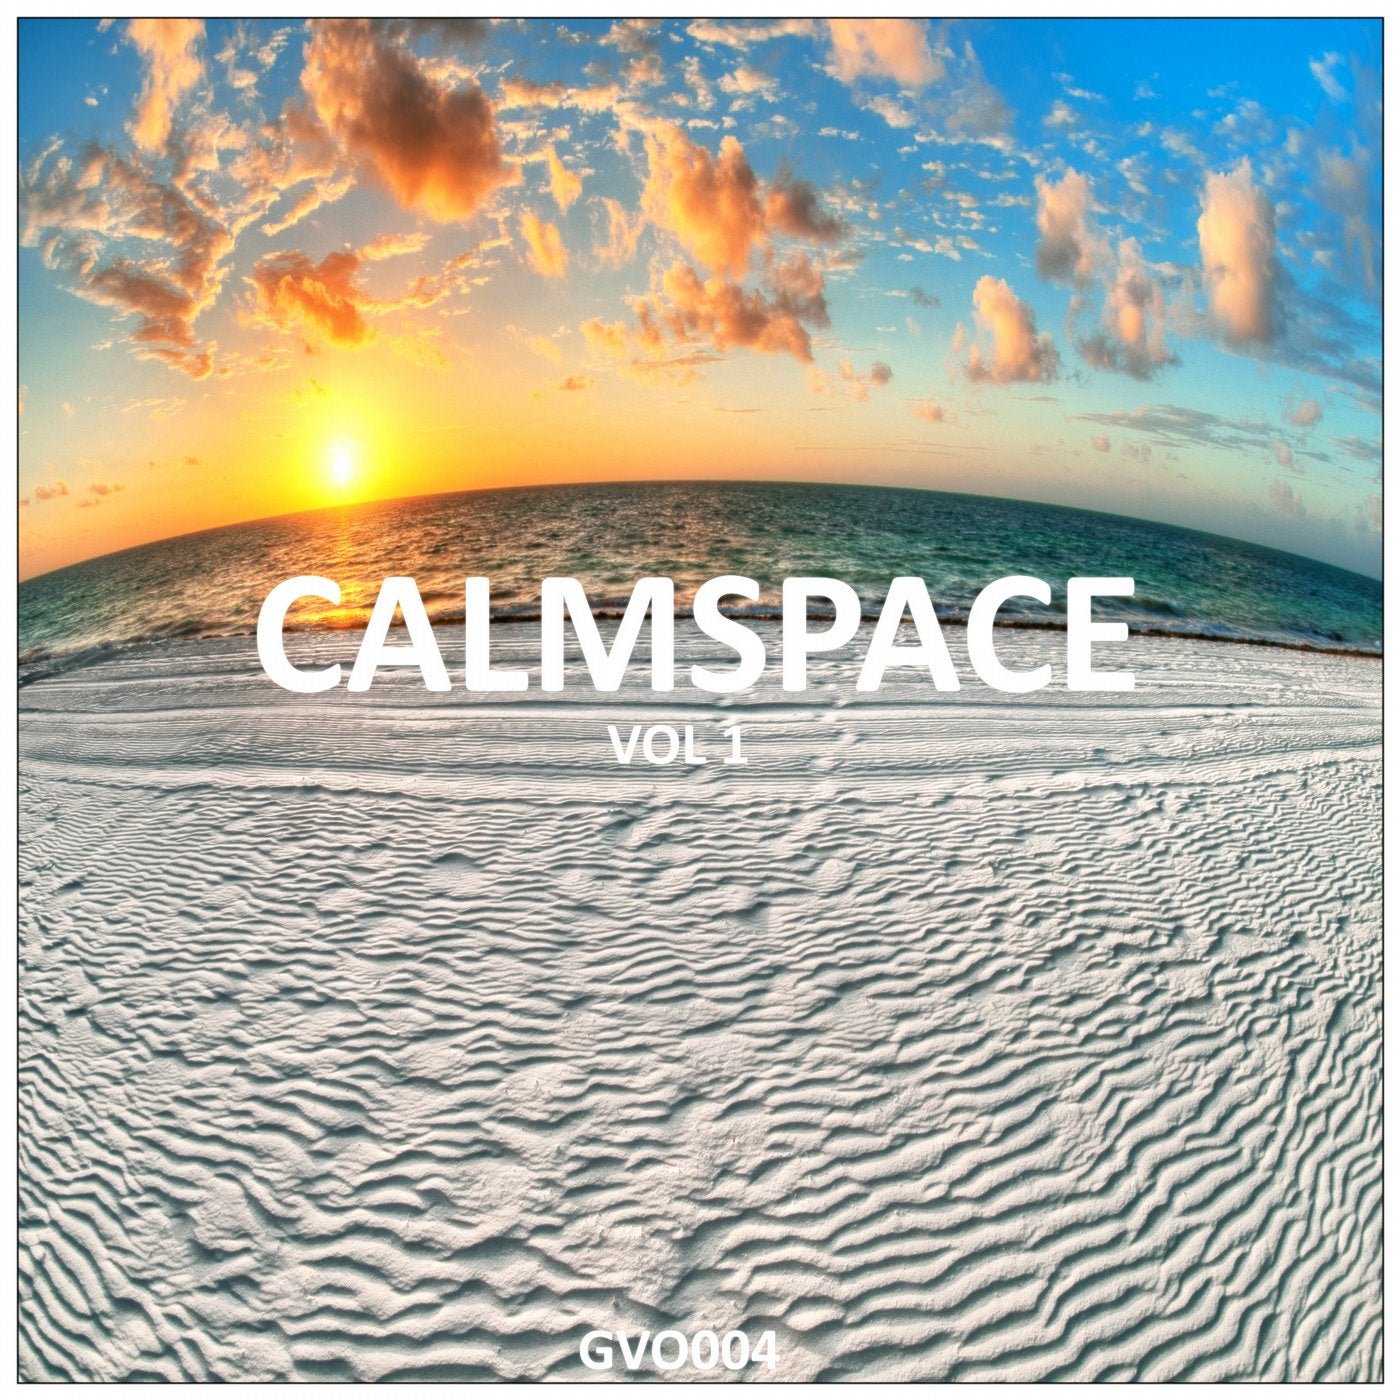 Calm Space